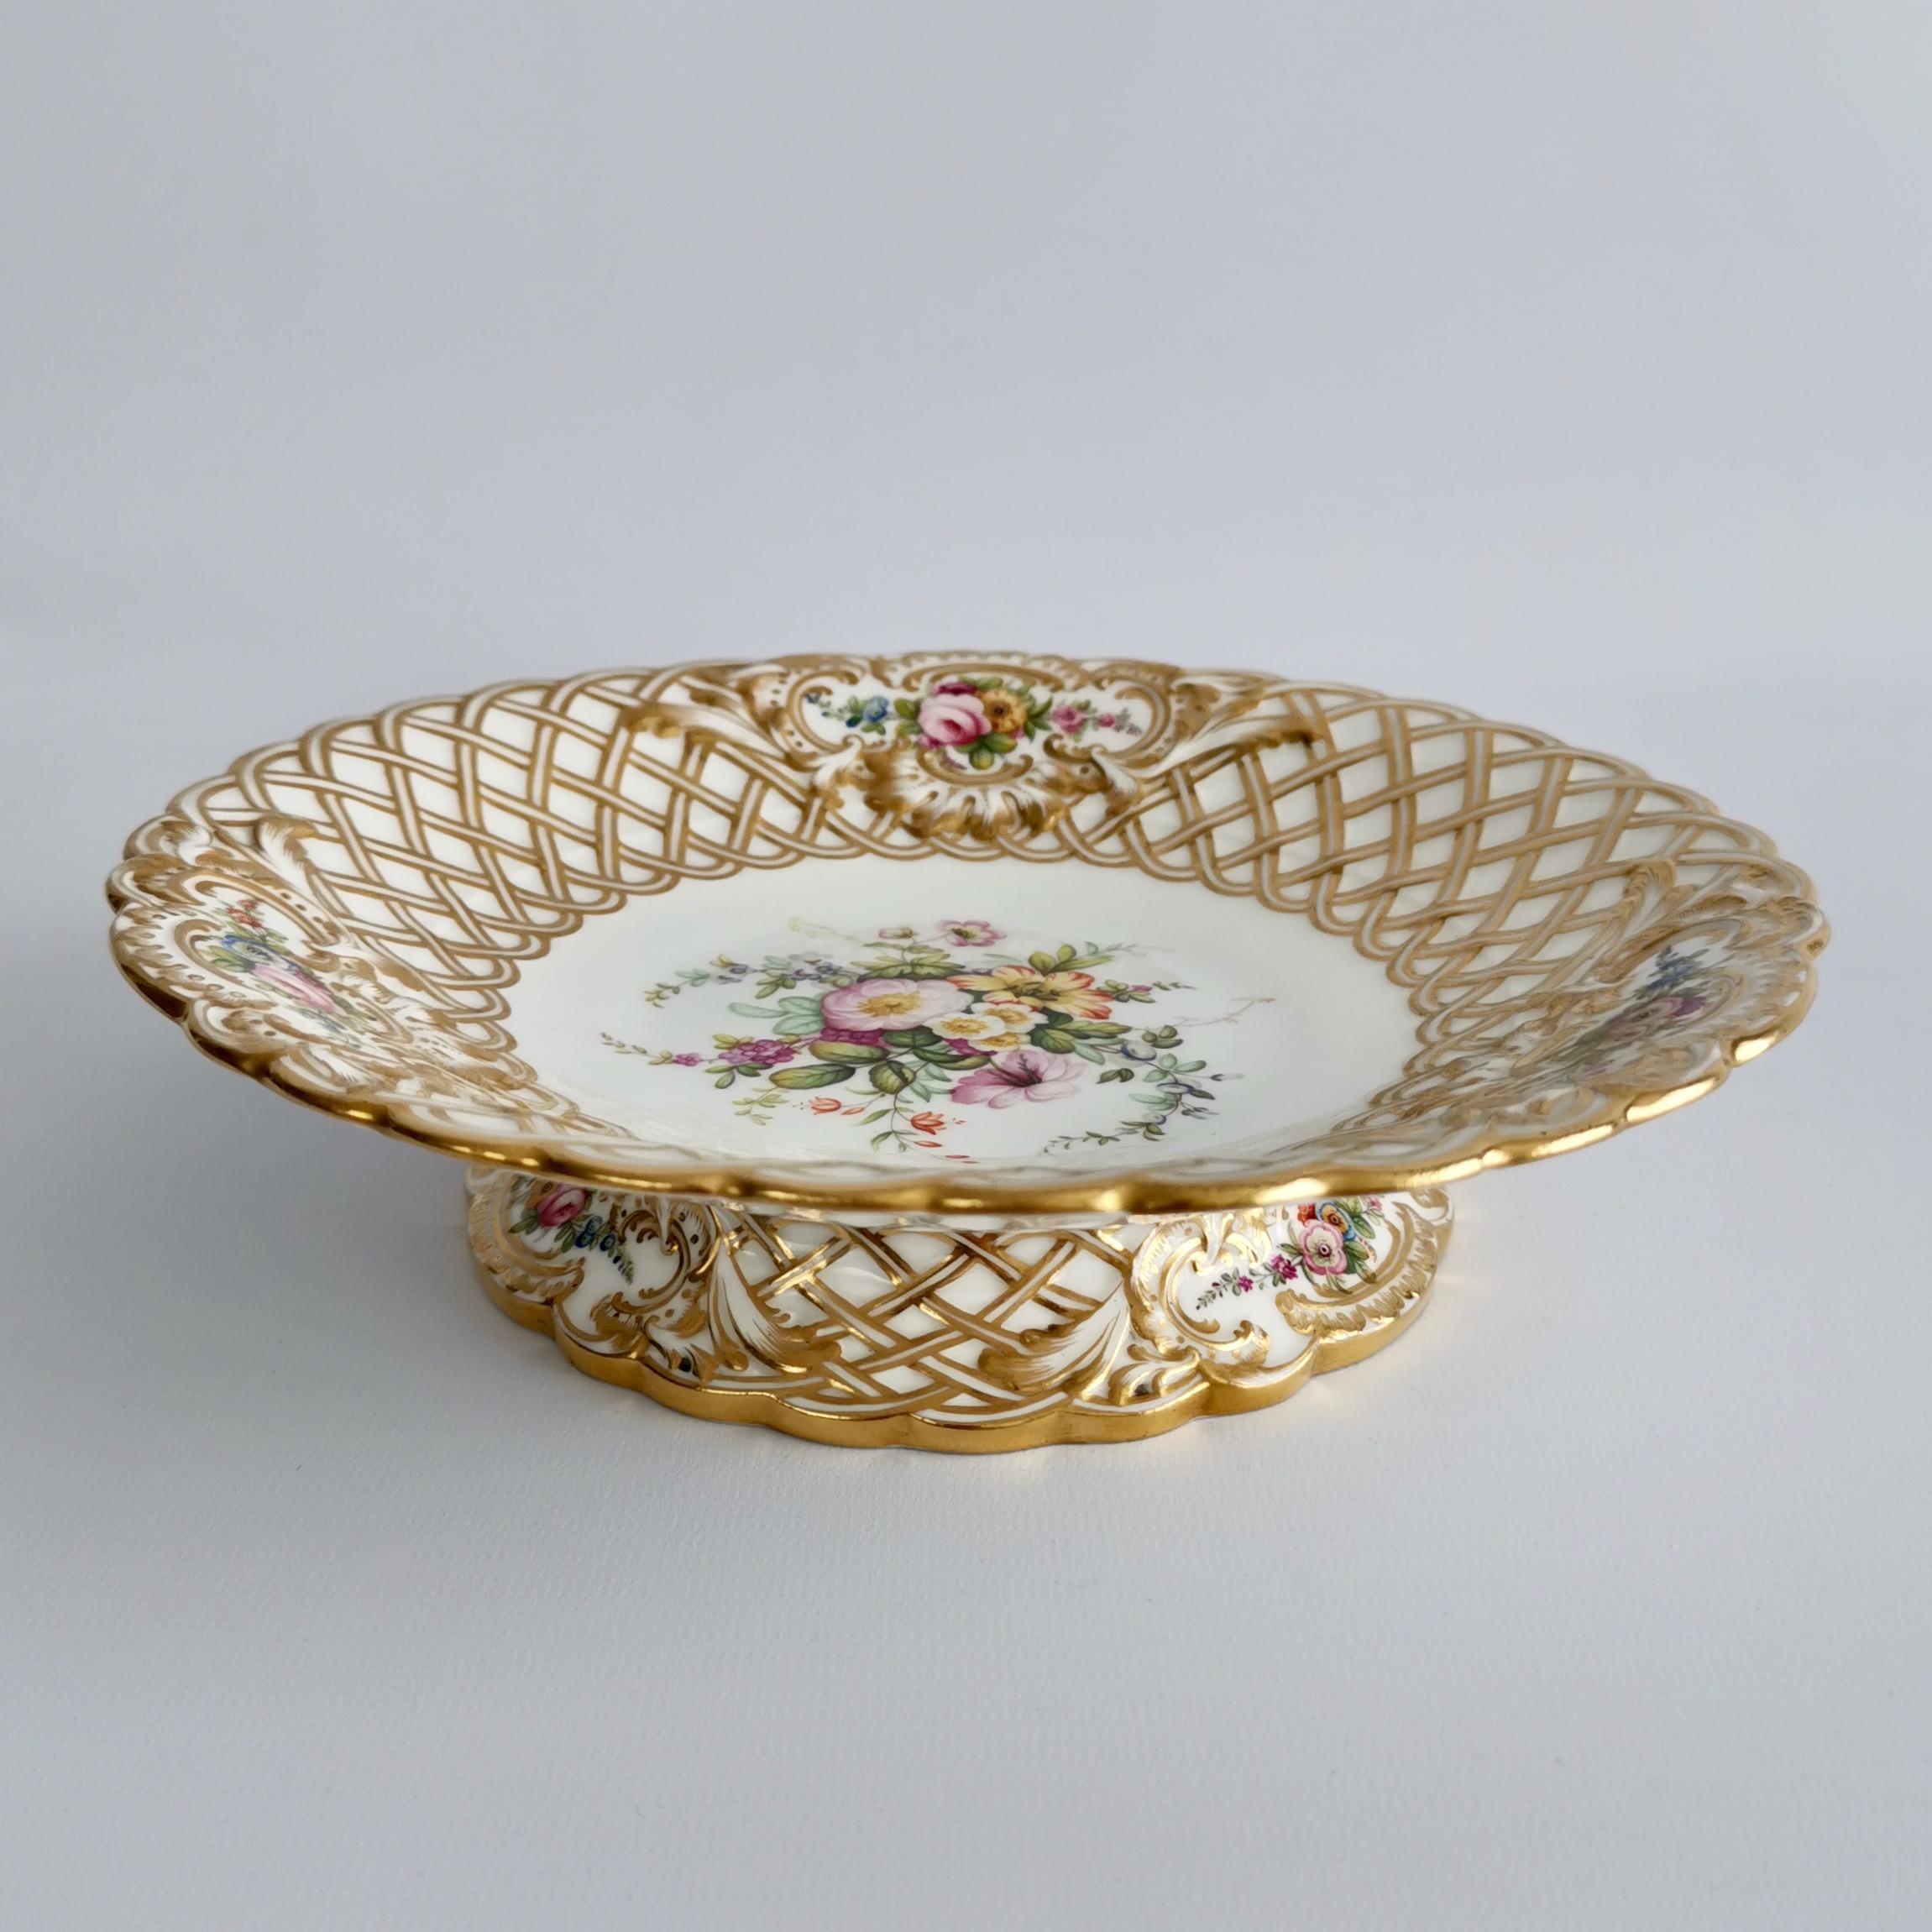 Hand-Painted Minton Porcelain Dessert Service, White, Flowers J. Bancroft, Victorian, 1841